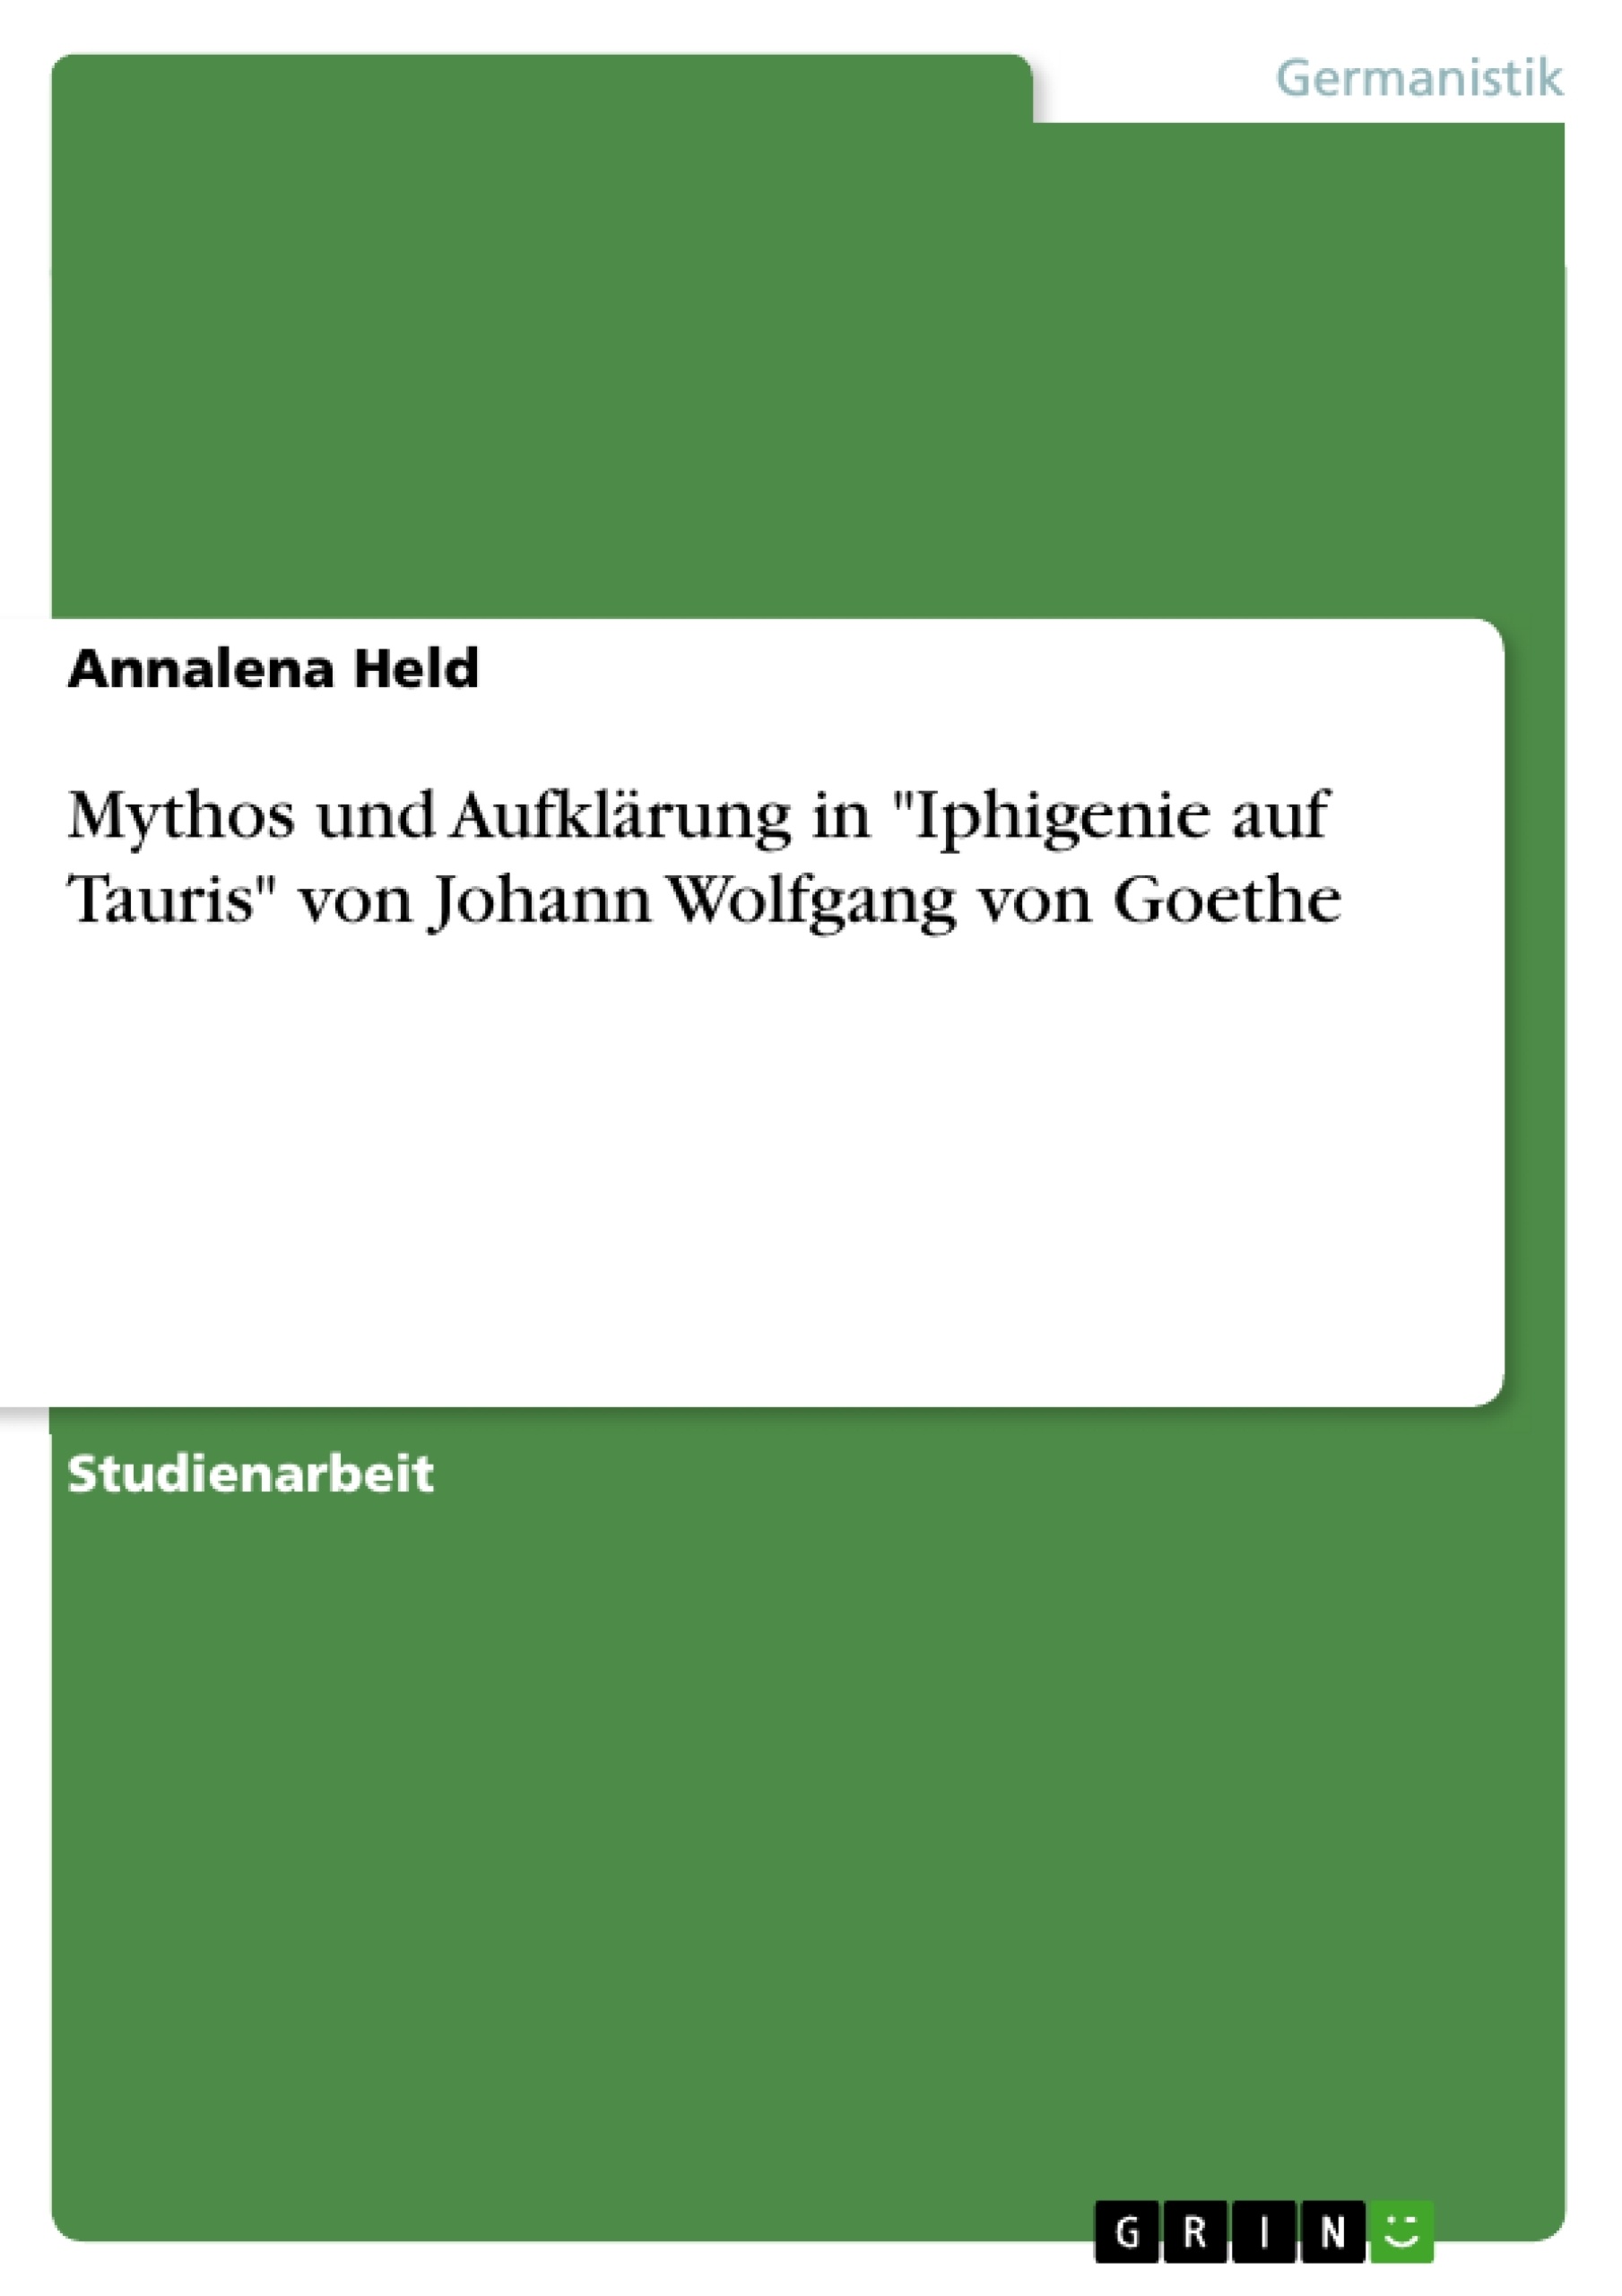 Title: Mythos und Aufklärung in "Iphigenie auf Tauris" von Johann Wolfgang von Goethe